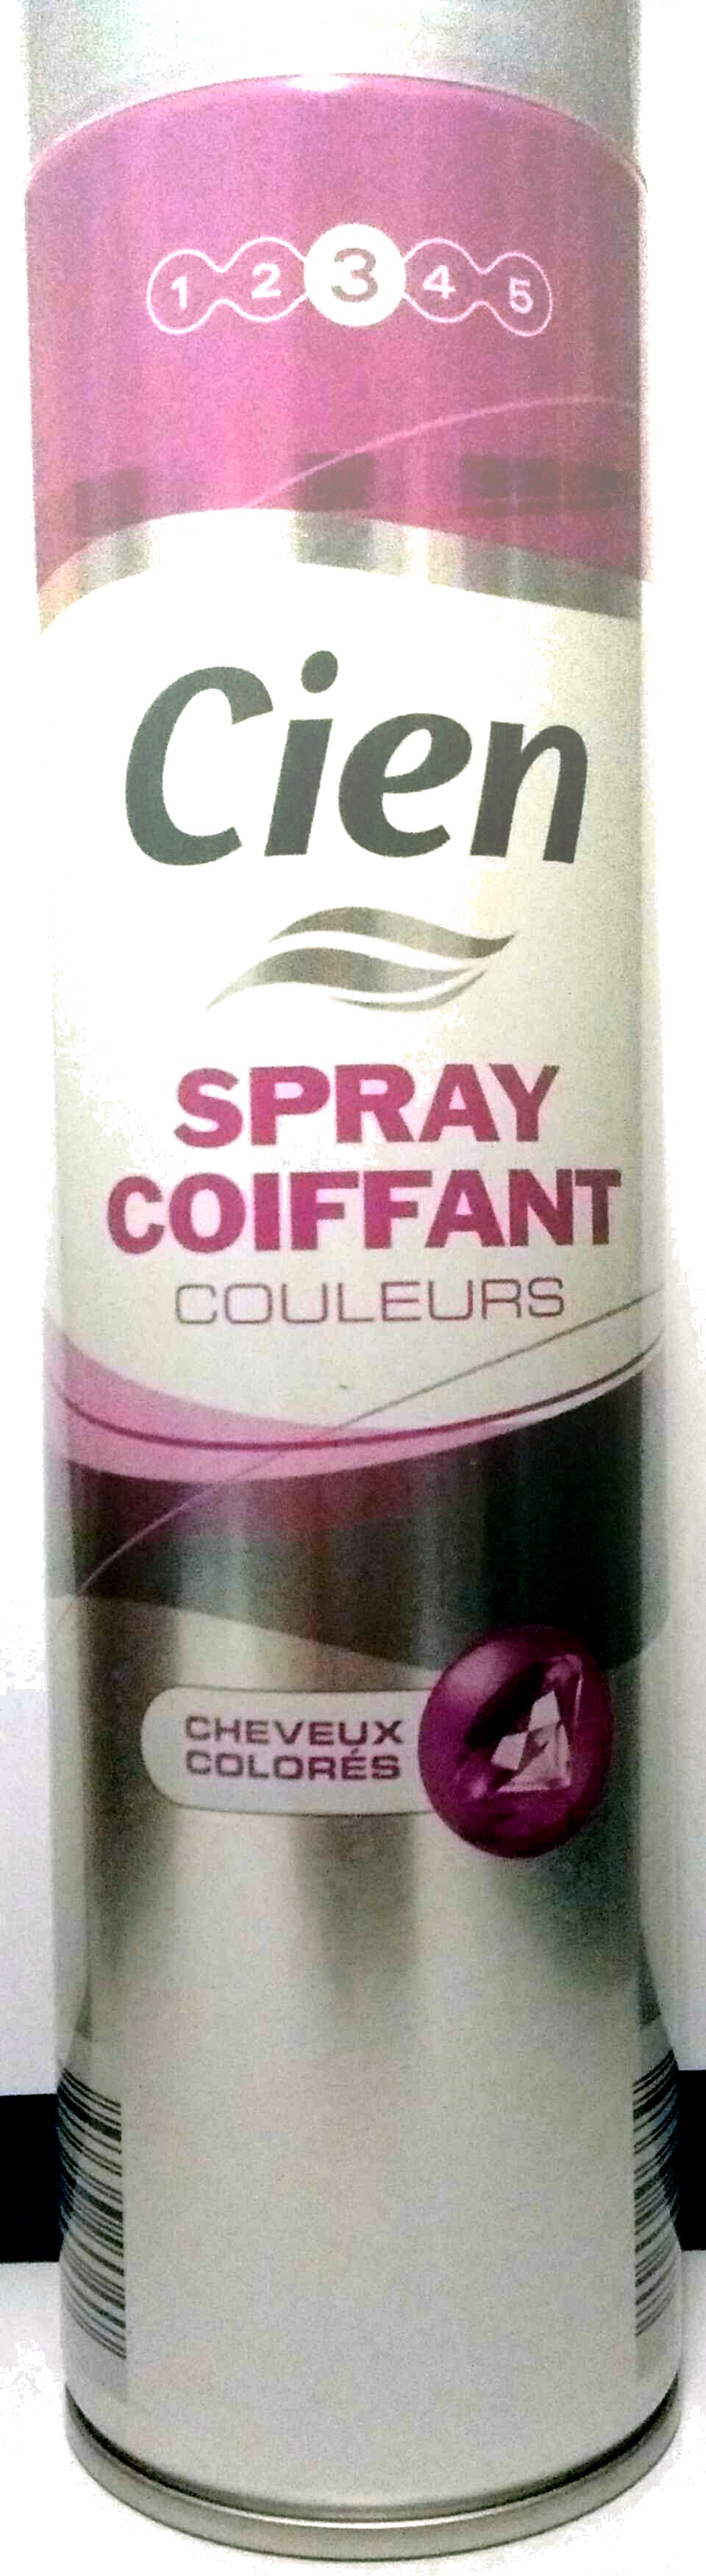 Spray coiffant couleurs - Produit - fr